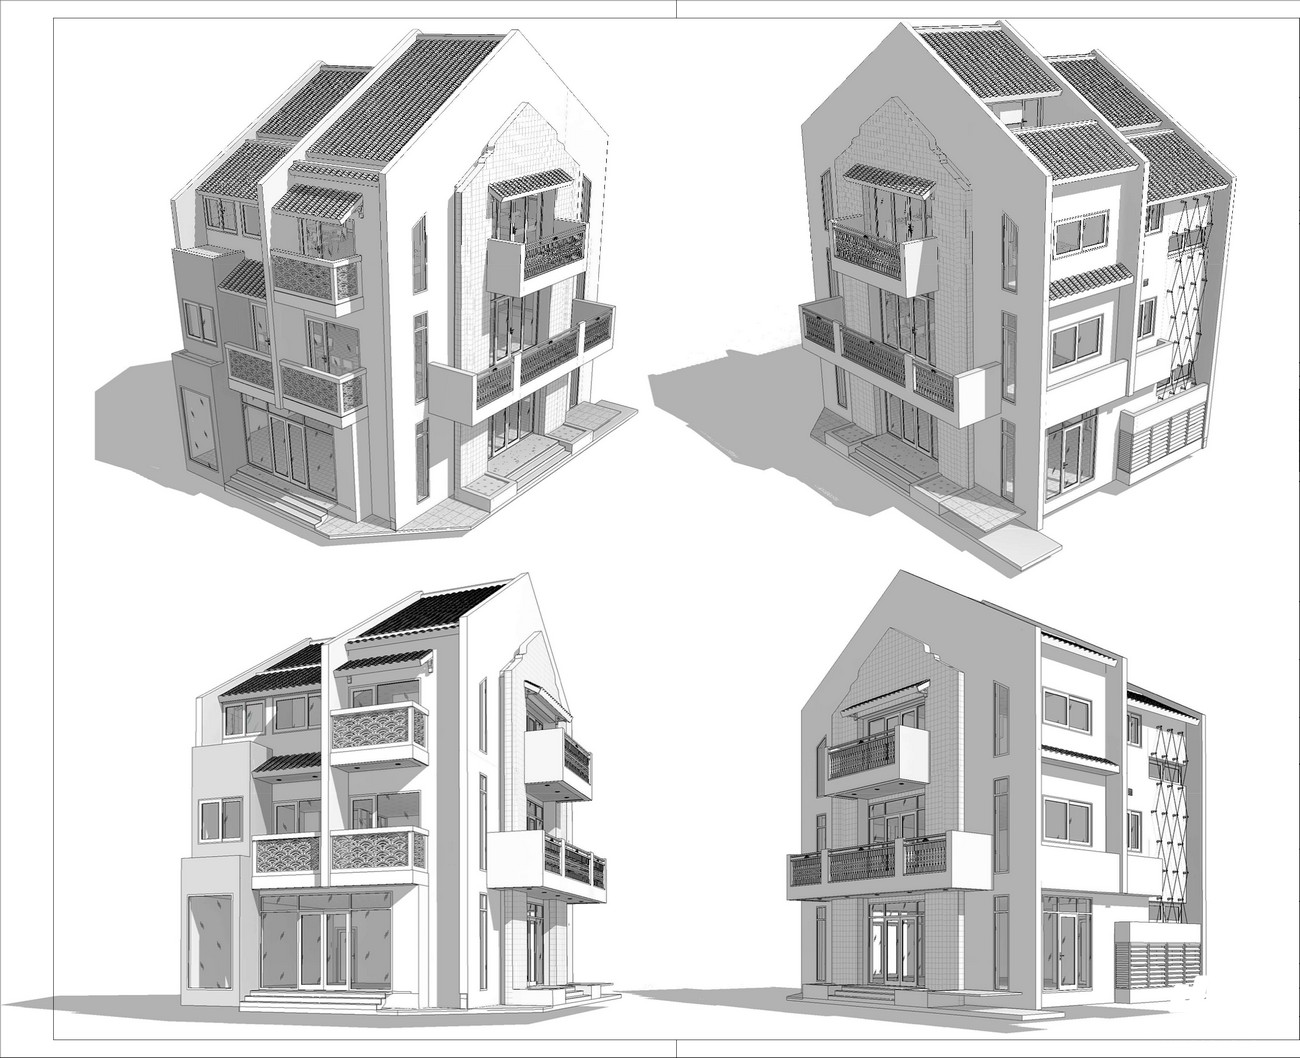 Thiết kế Shophouse Special loại 2 dự án căn hộ nghĩ dưỡng Hội An D'or Hội An Đường Cẩm Nam chủ đầu tư Bamboo Capital